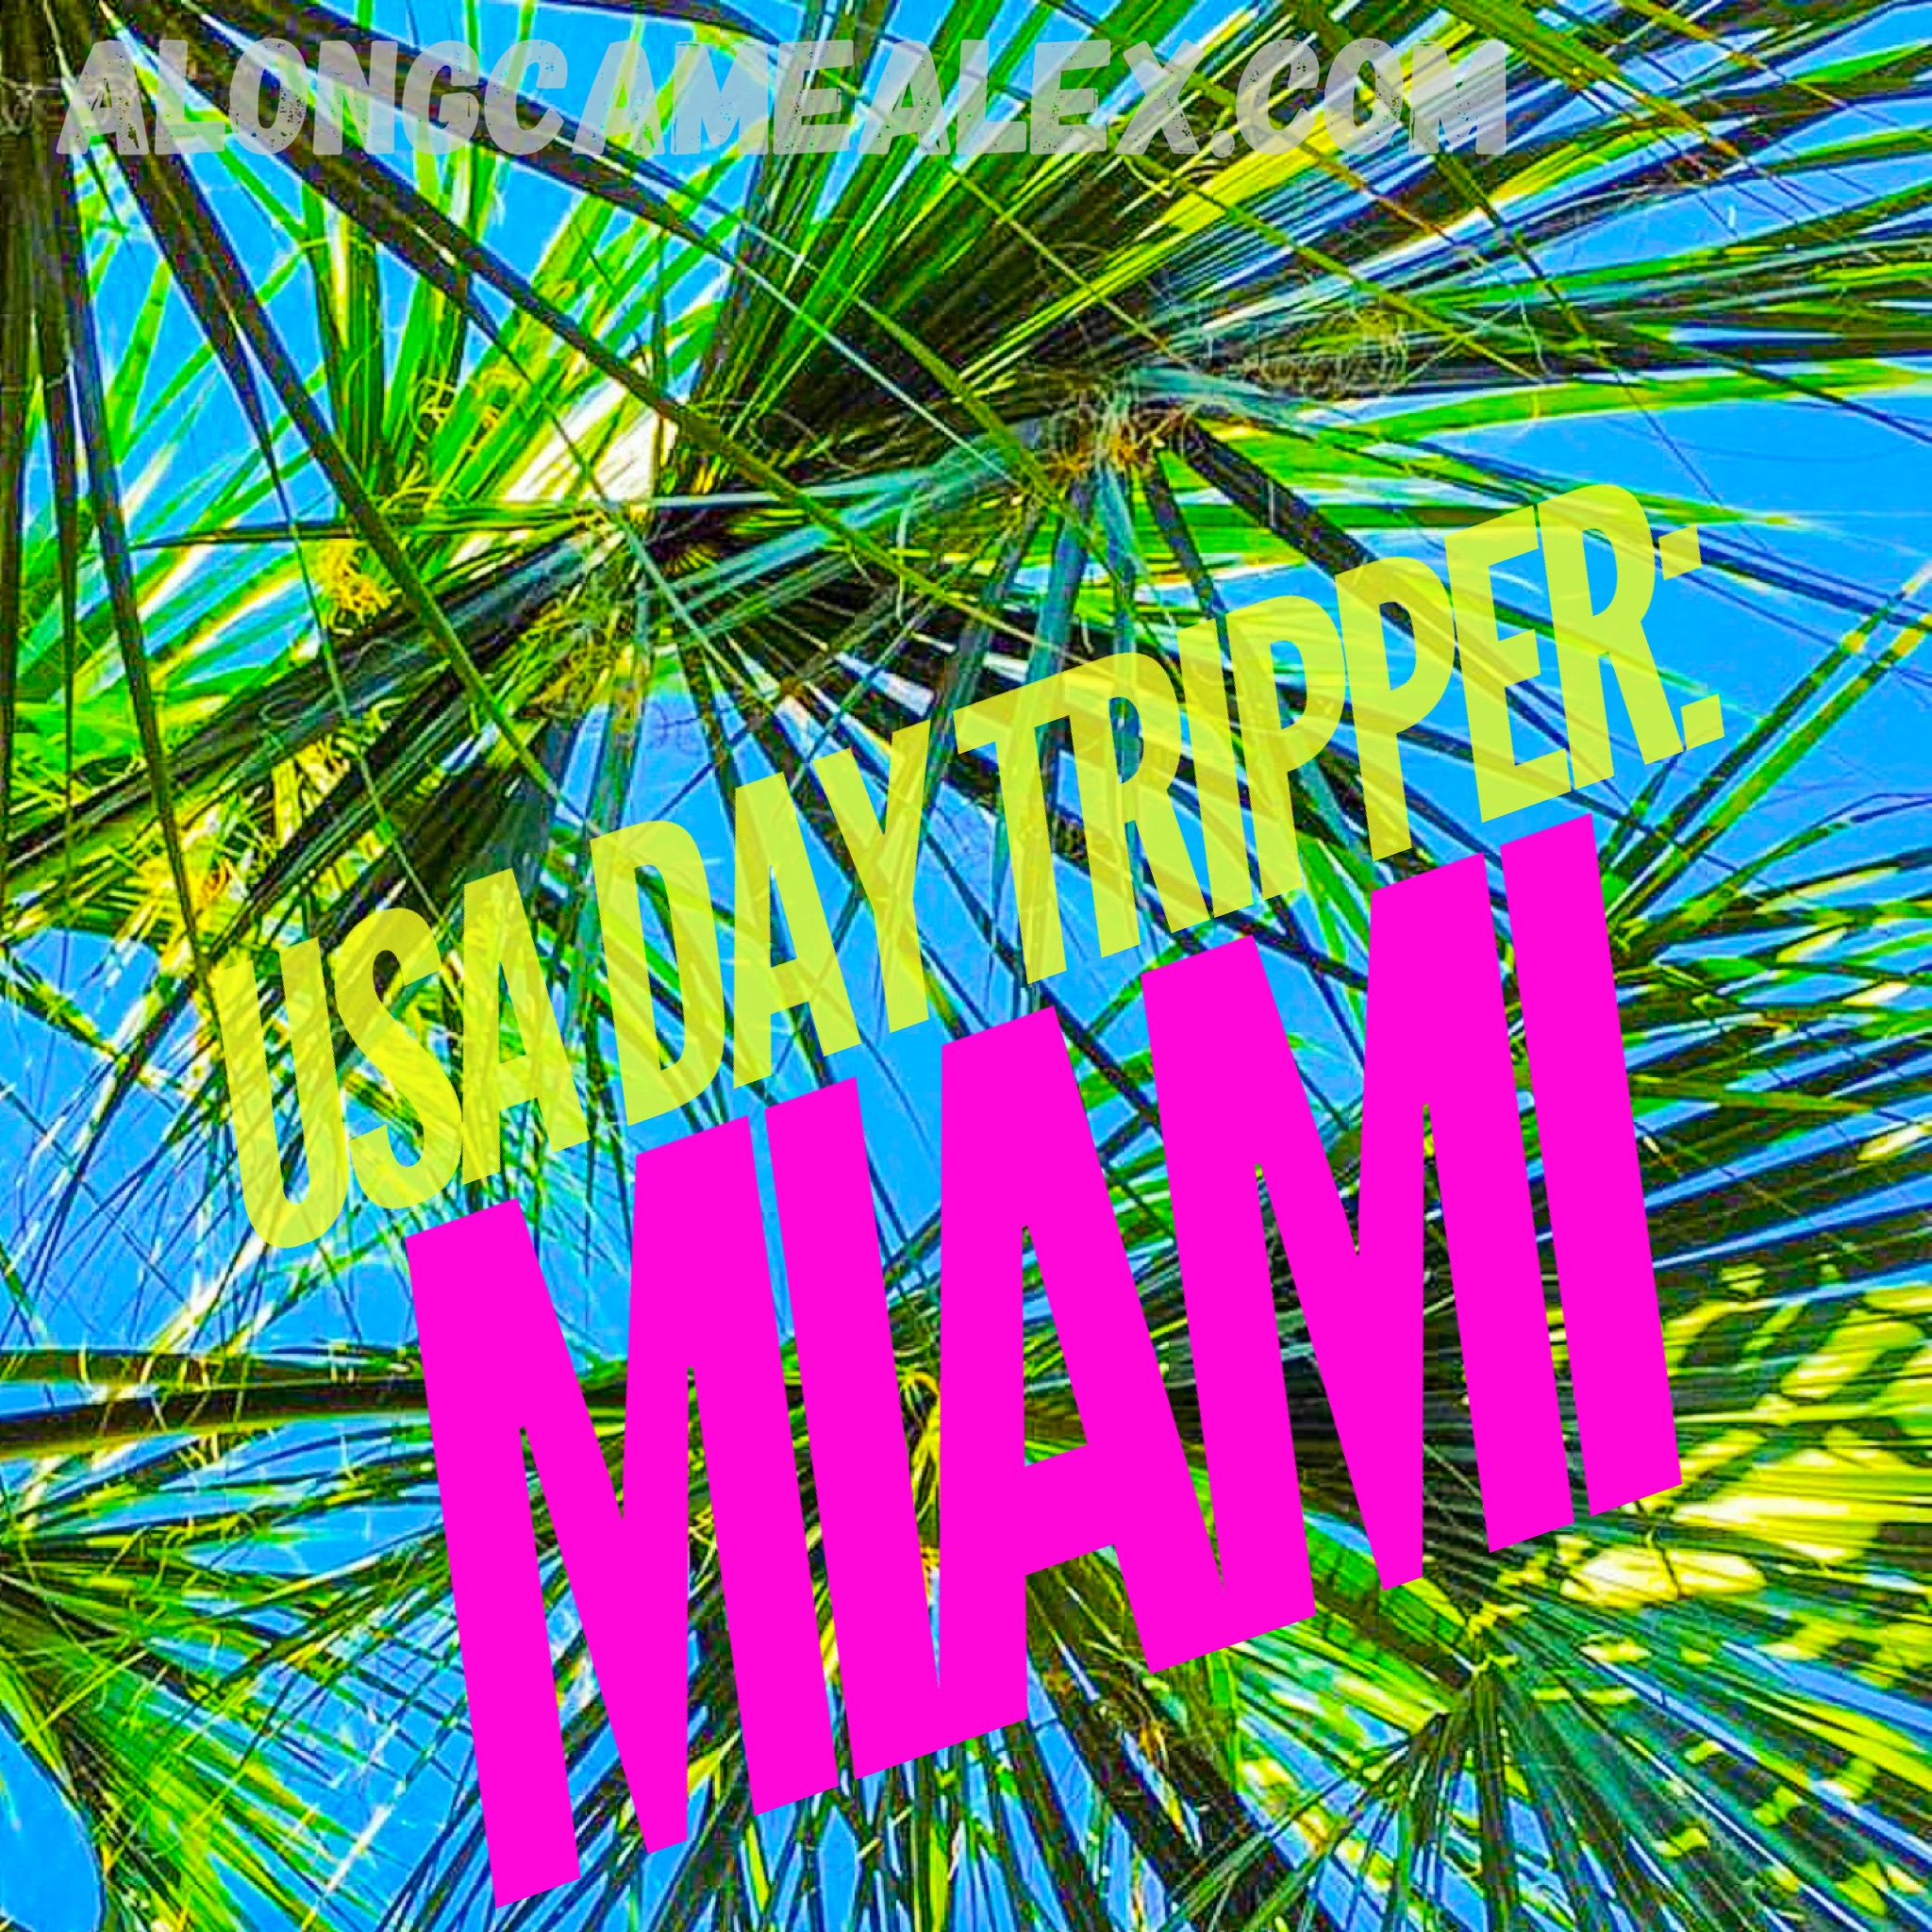 USA Day Tripper: Miami